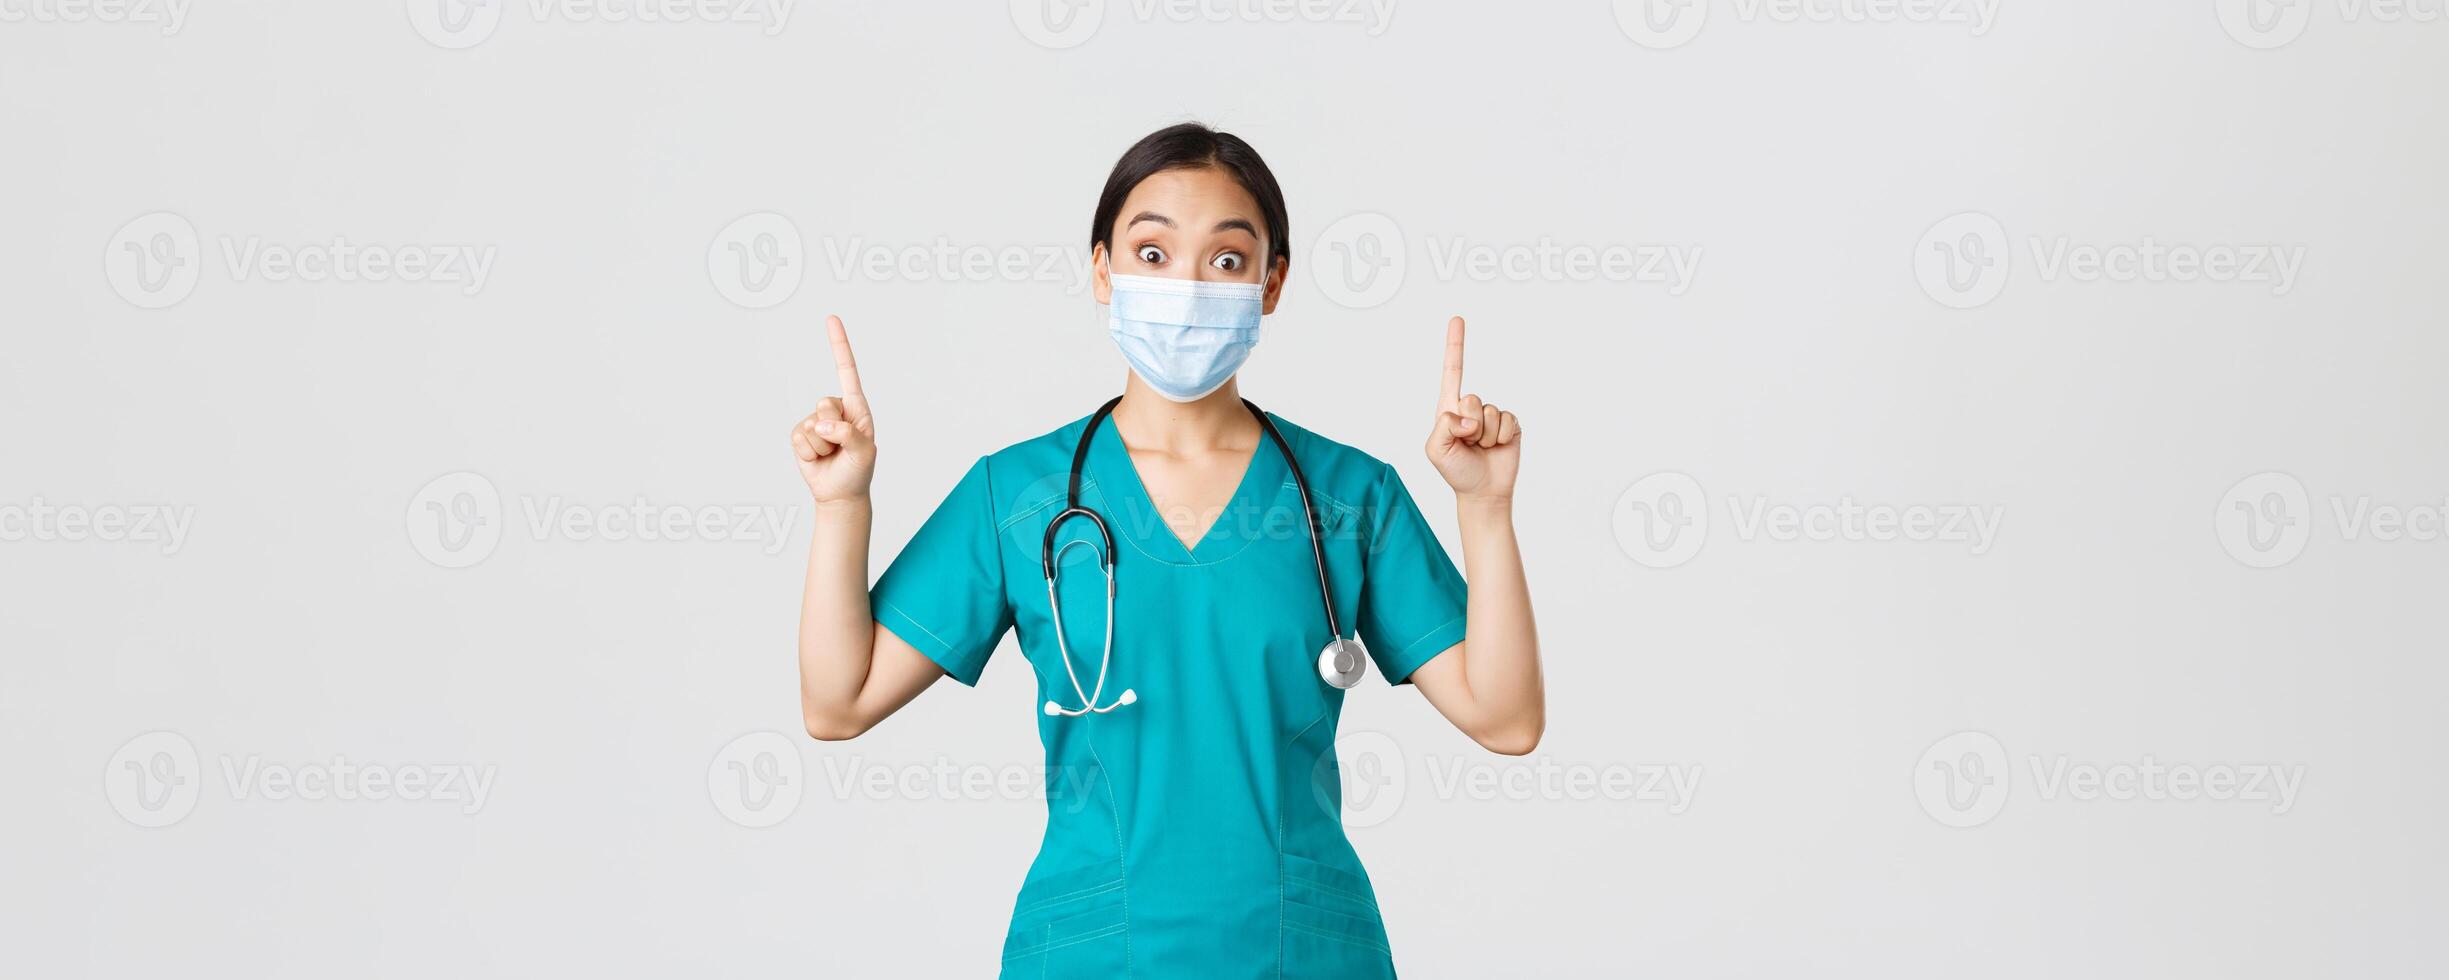 covid19, coronavirus sjukdom, sjukvård arbetare begrepp. fascinerad asiatisk kvinna läkare, läkare eller internera i medicinsk mask och skrubbar, ser nyfiken, pekande fingrar upp, vit bakgrund foto